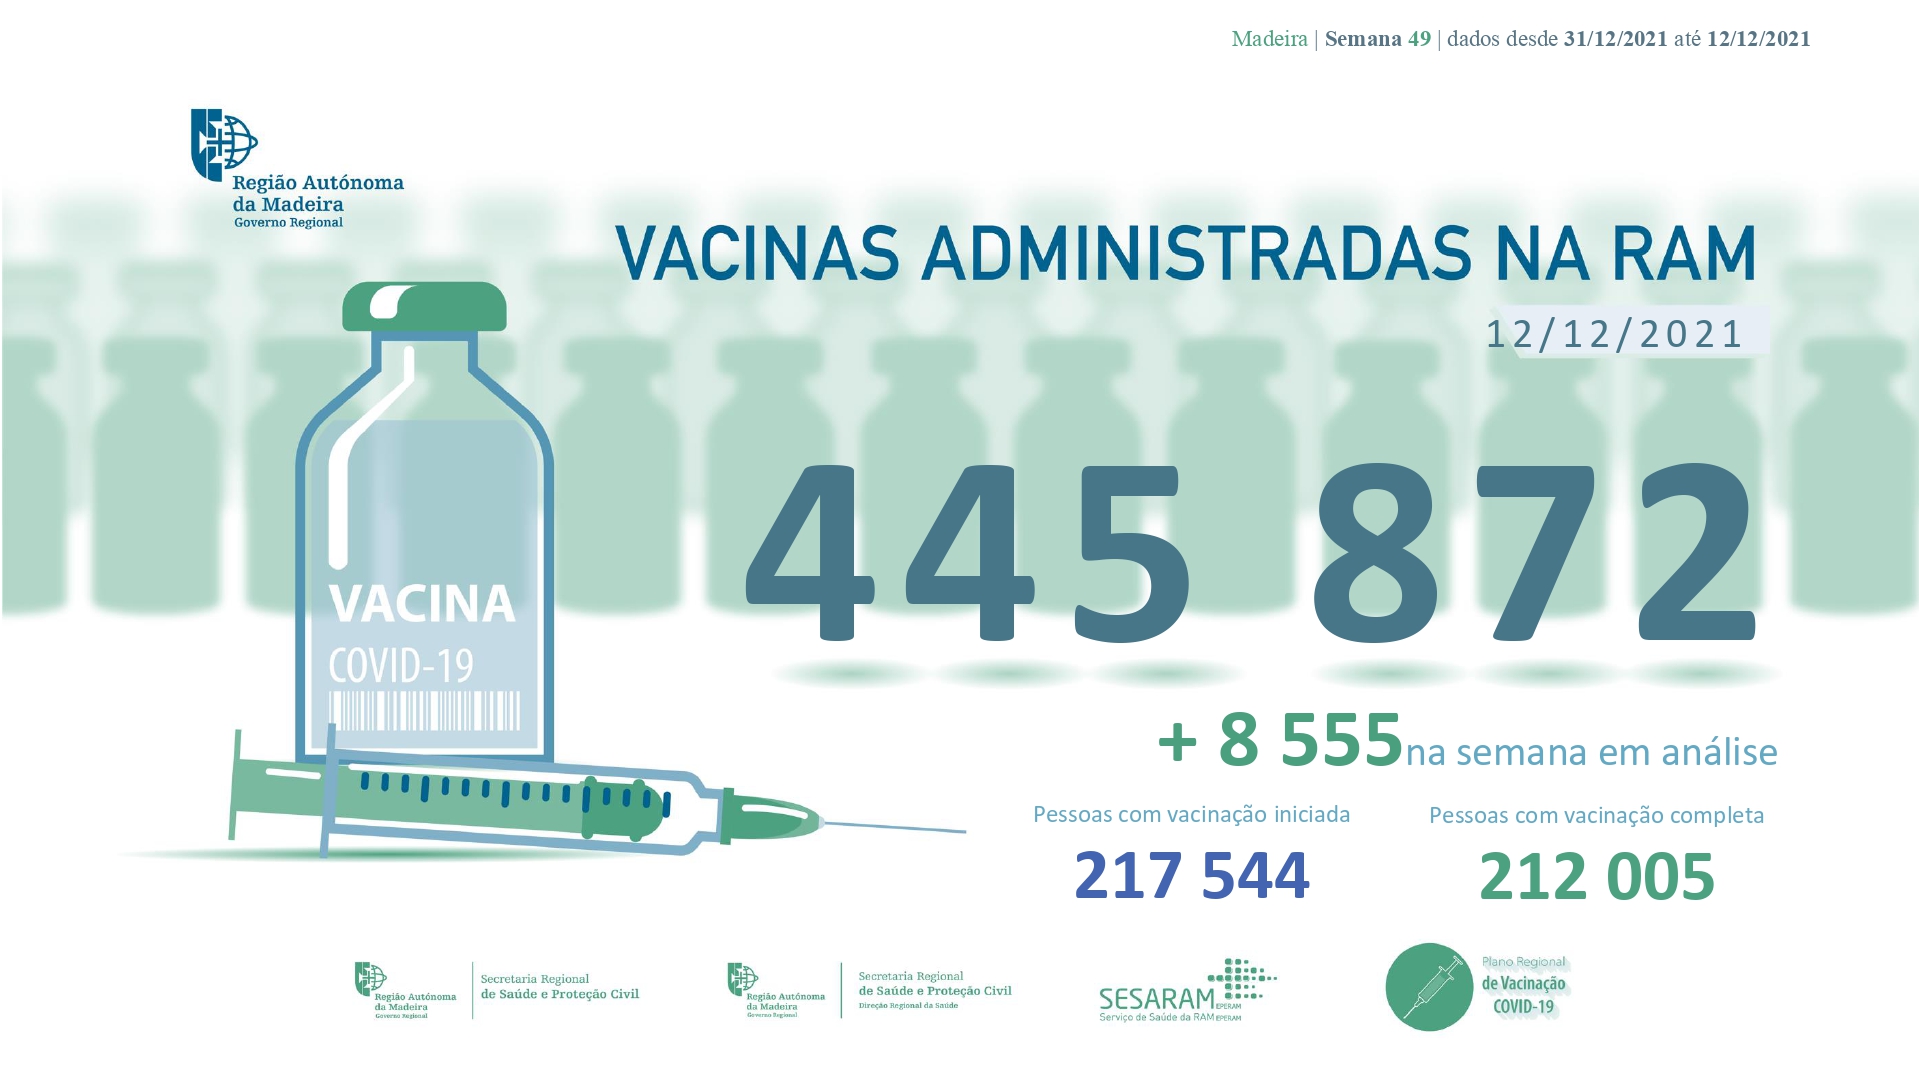 Administradas mais de 445 872 vacinas contra a COVID-19 na RAM